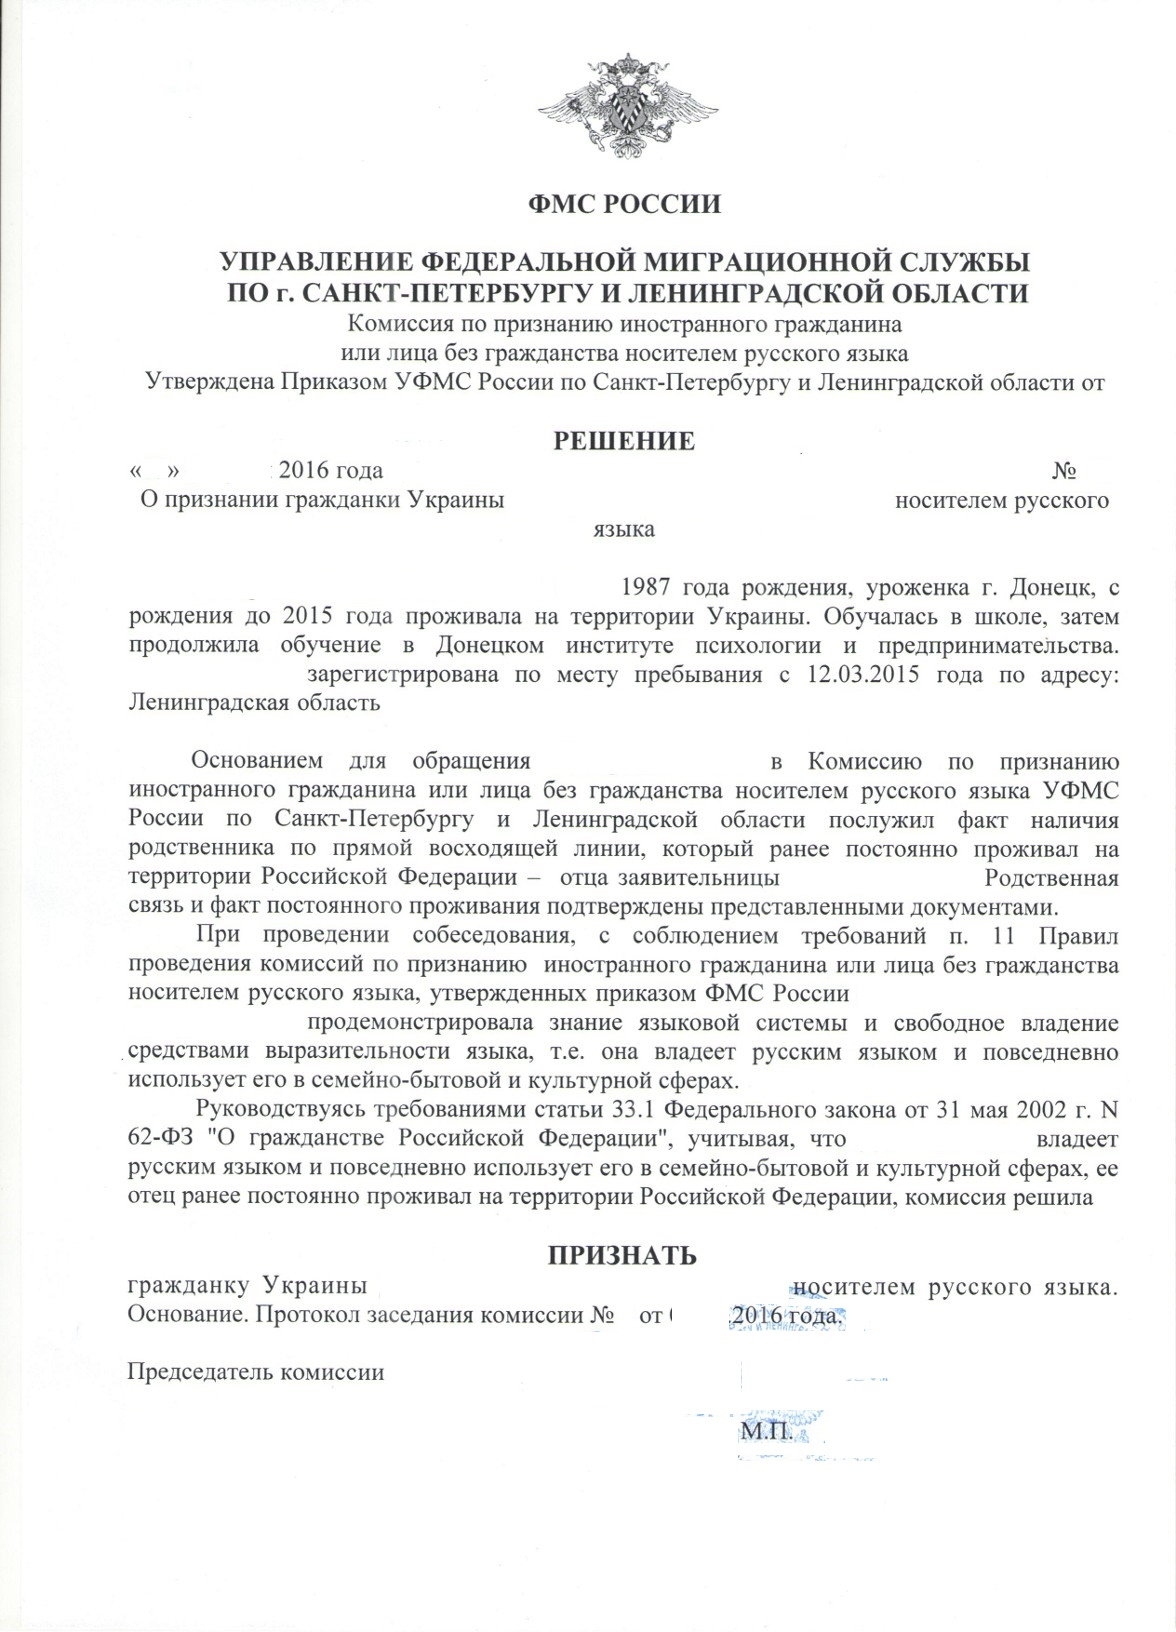 Сертификат носителя русского языка